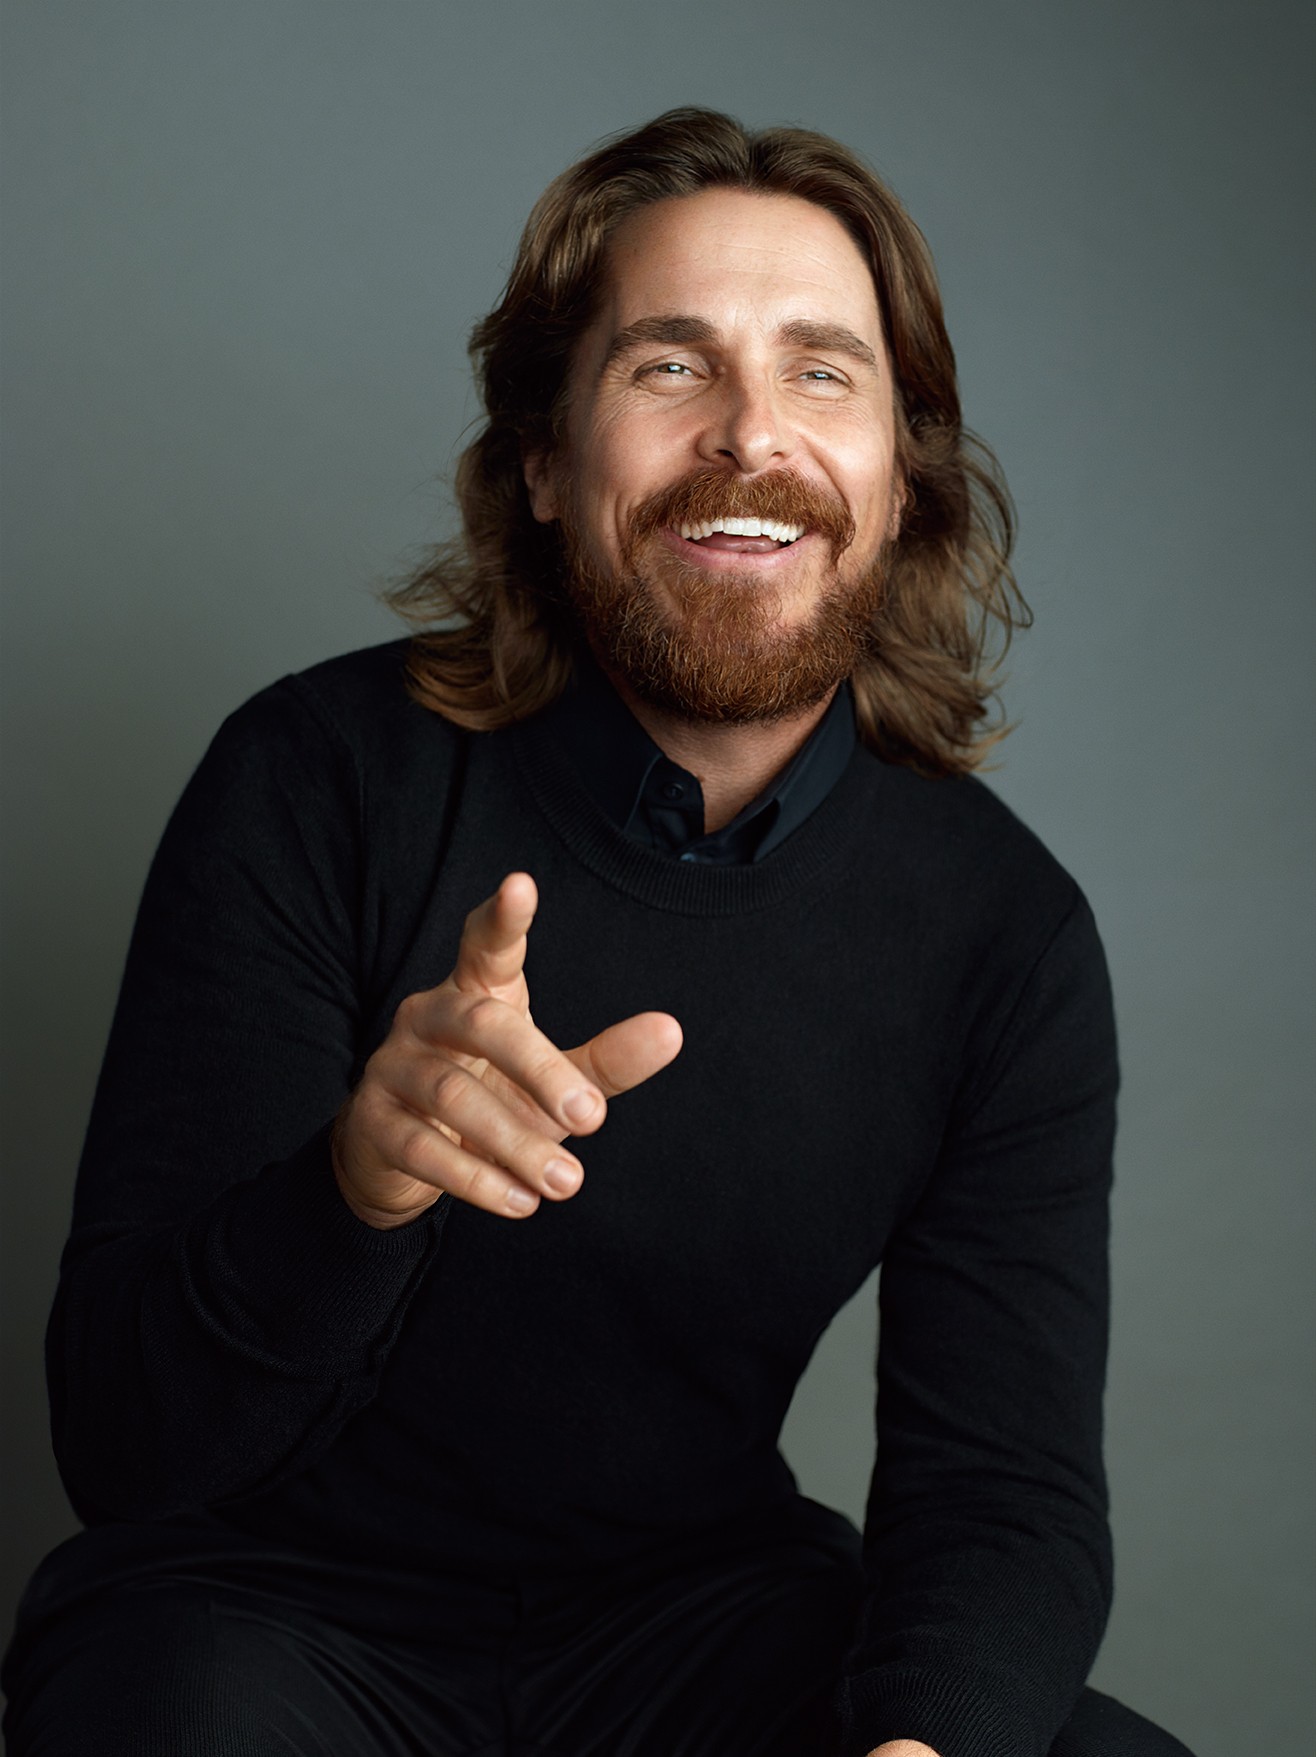 People 1316x1757 Christian Bale actor men smiling beard women indoors men indoors studio